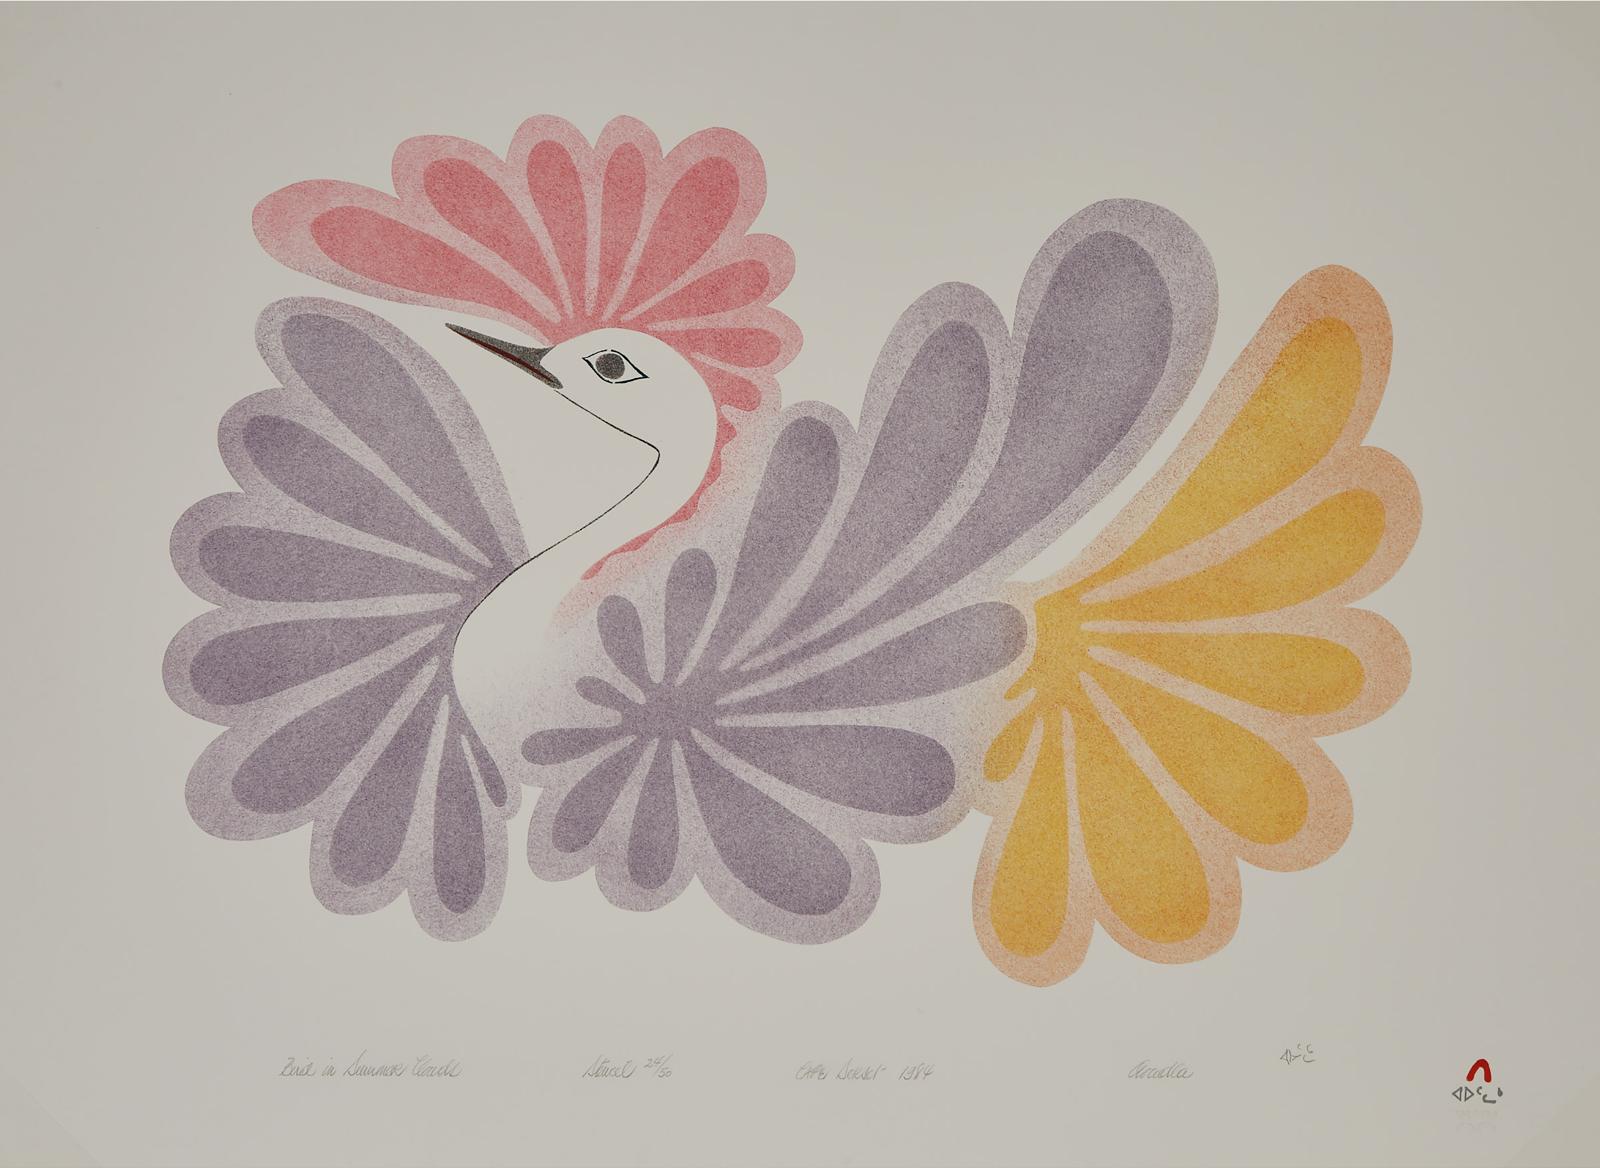 Aoudla Pudlat (1951-2006) - Bird In Summer Clouds